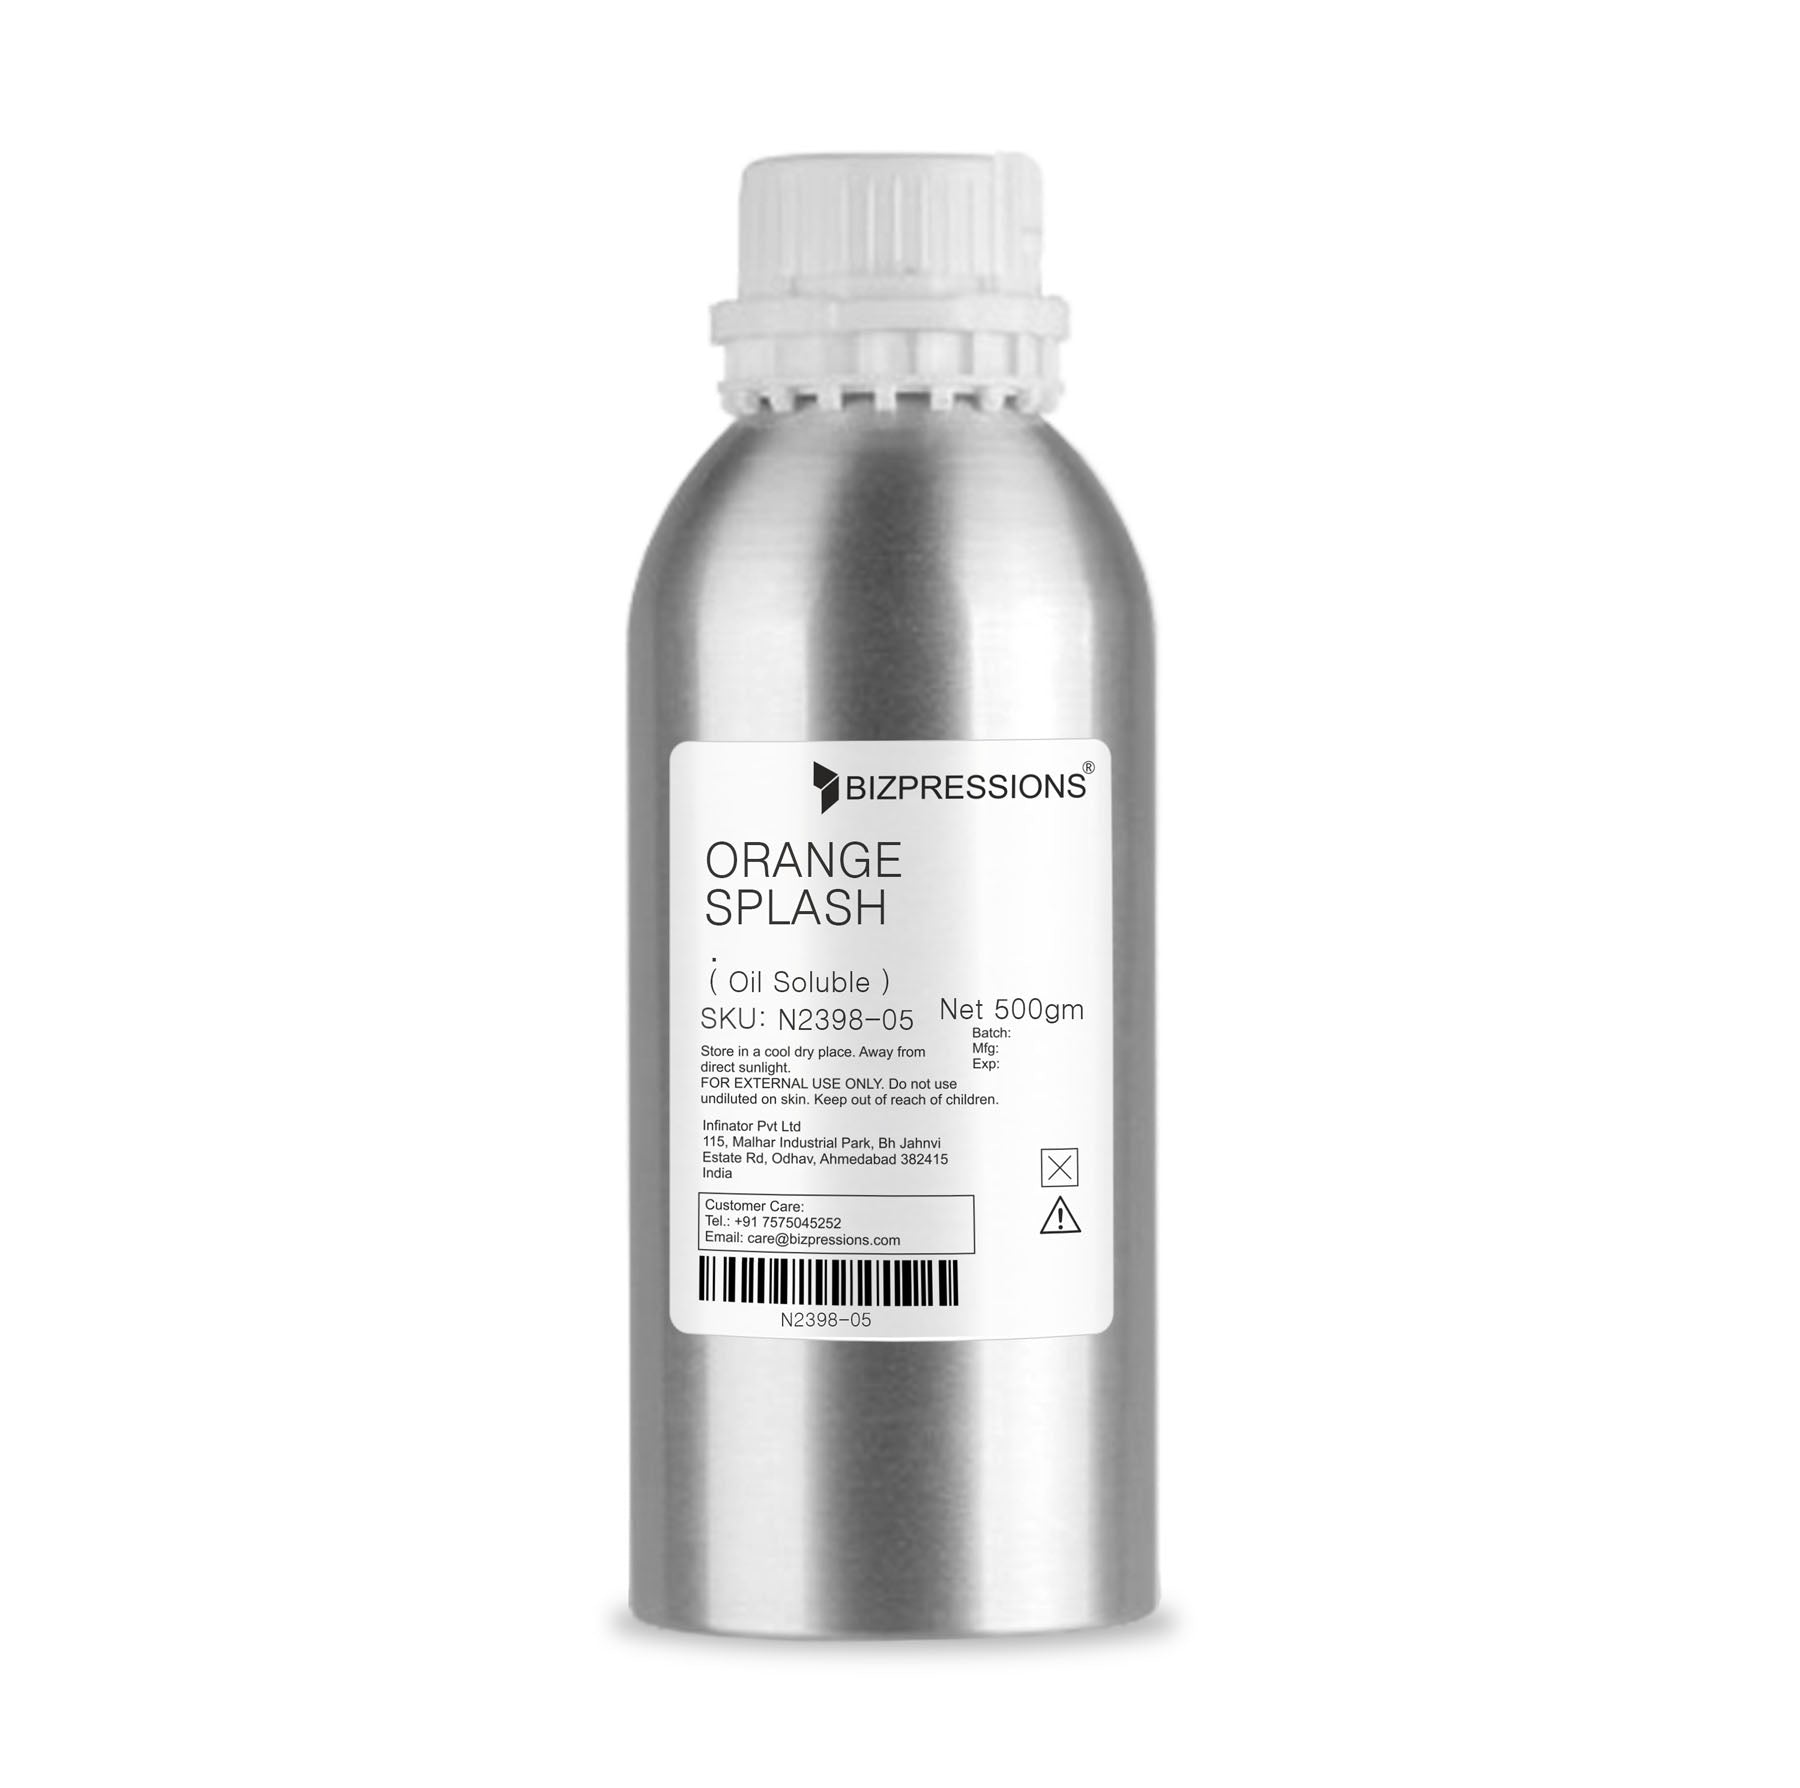 ORANGE SPLASH - Fragrance ( Oil Soluble ) - 500 gm